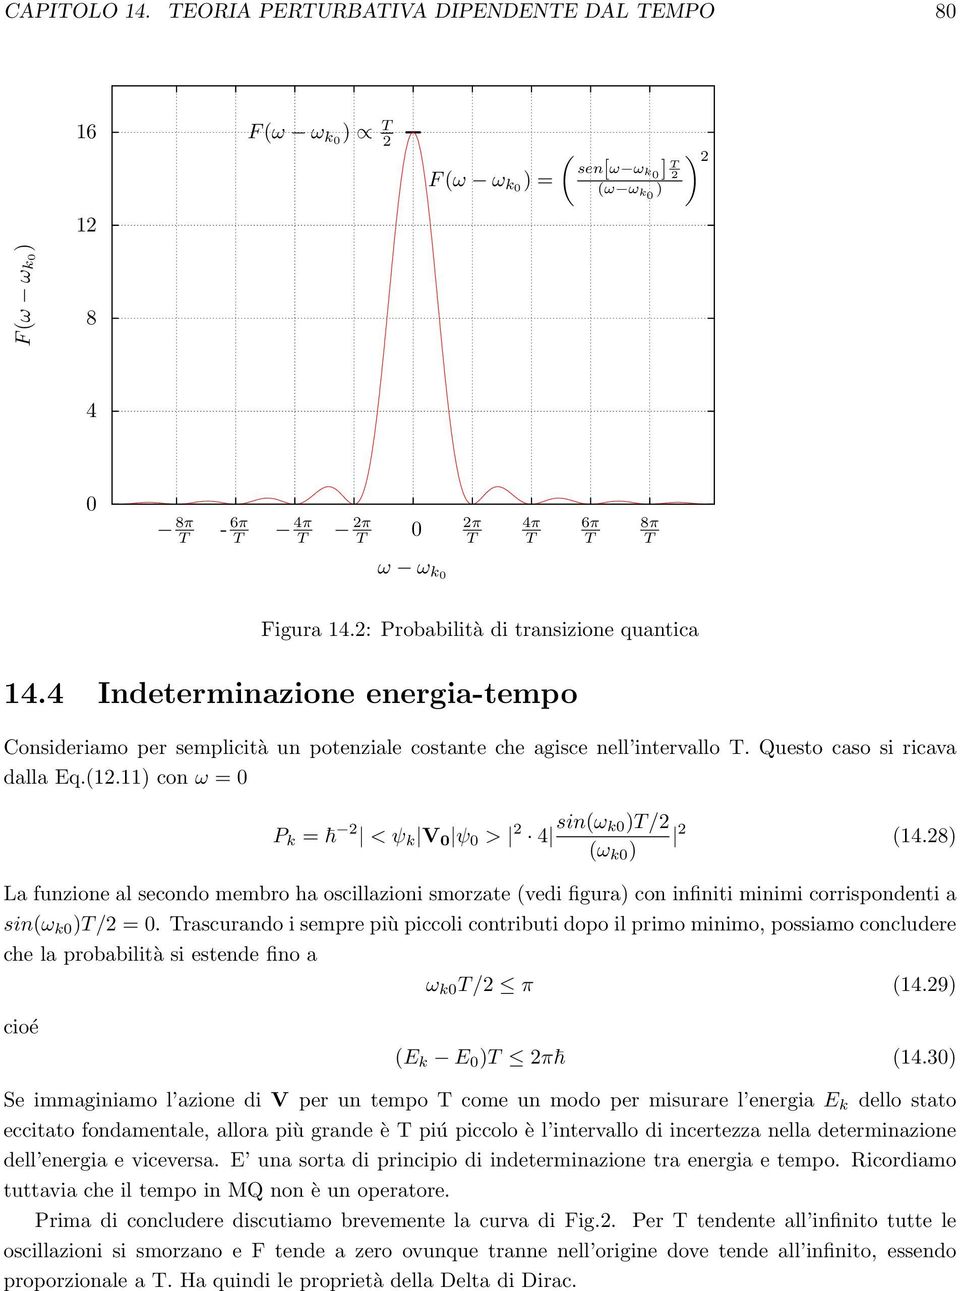 11) con ω = P k = 2 < ψ k V ψ > 2 4 sin(ω k)/2 2 (14.28) (ω k ) La funzione al secondo membro ha oscillazioni smorzate (vedi figura) con infiniti minimi corrispondenti a sin(ω k )/2 =.